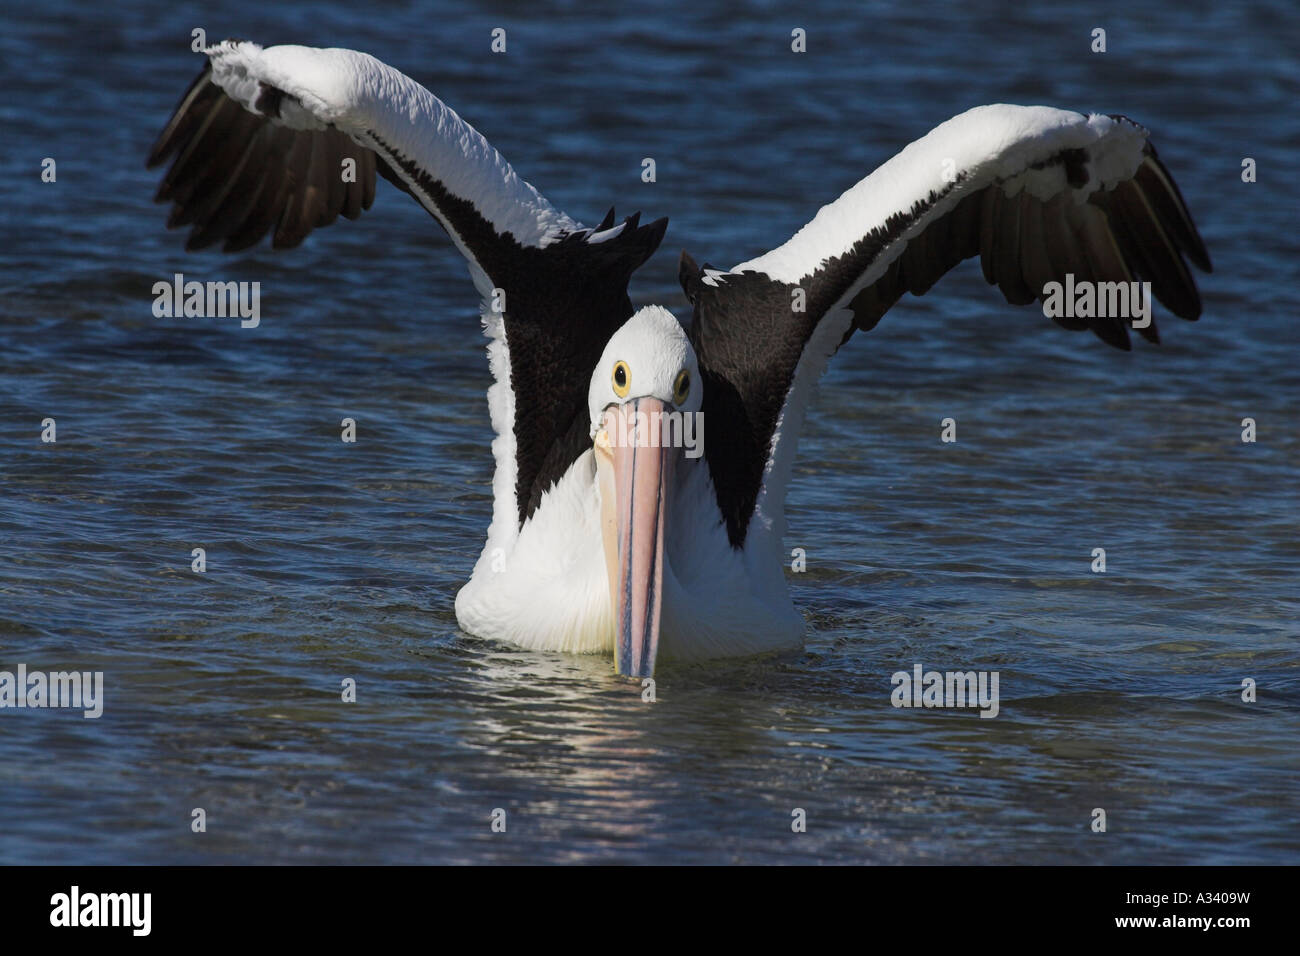 australian pelican, pelecanus conspicillatus, wings raised Stock Photo